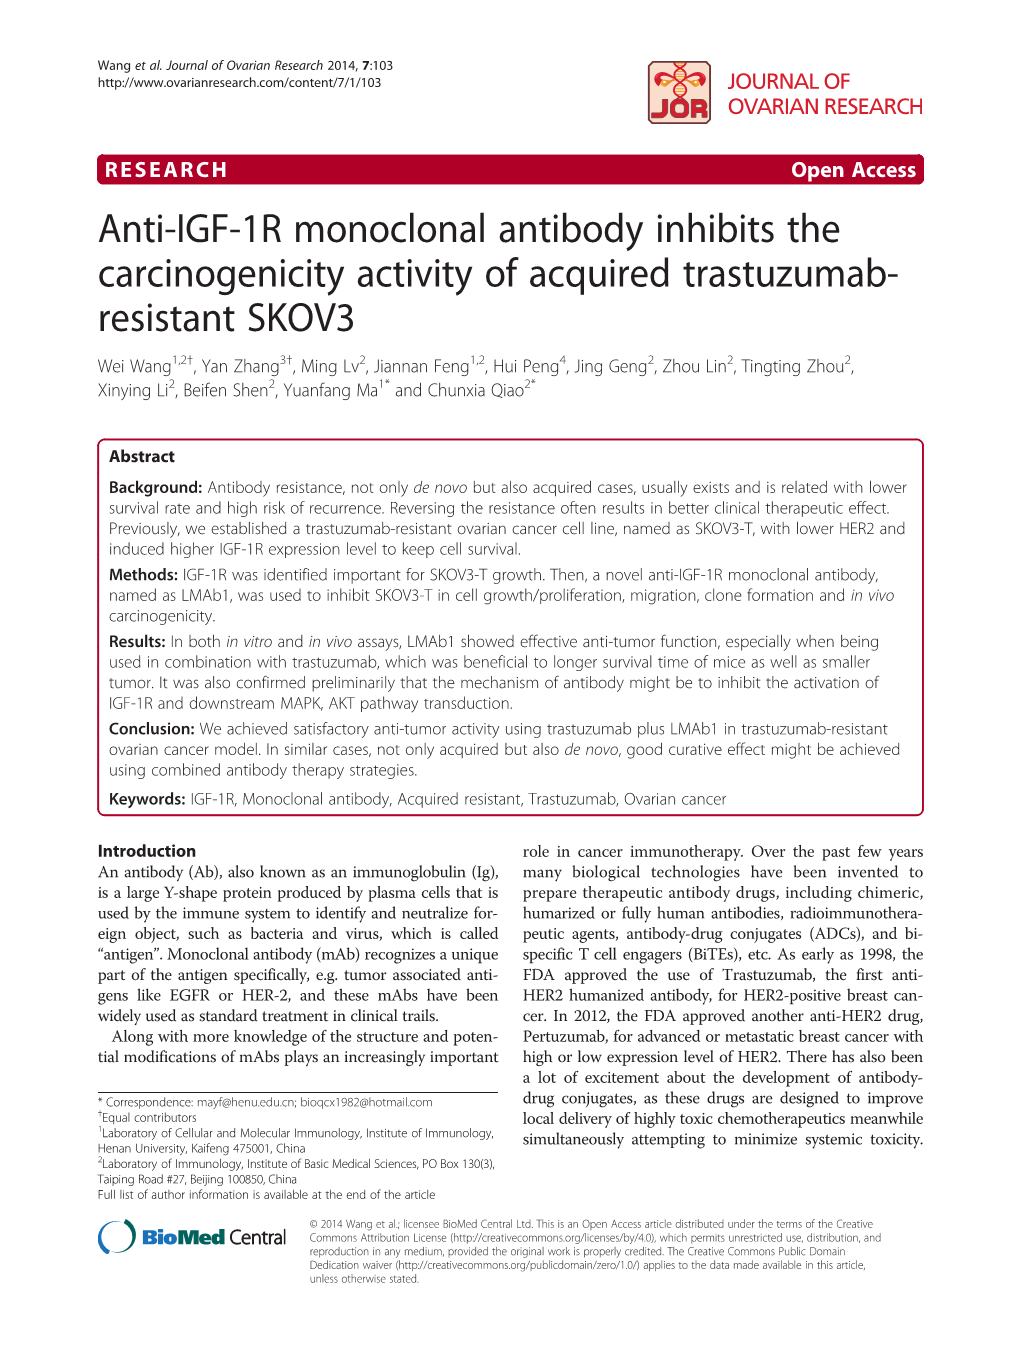 Anti-IGF-1R Monoclonal Antibody